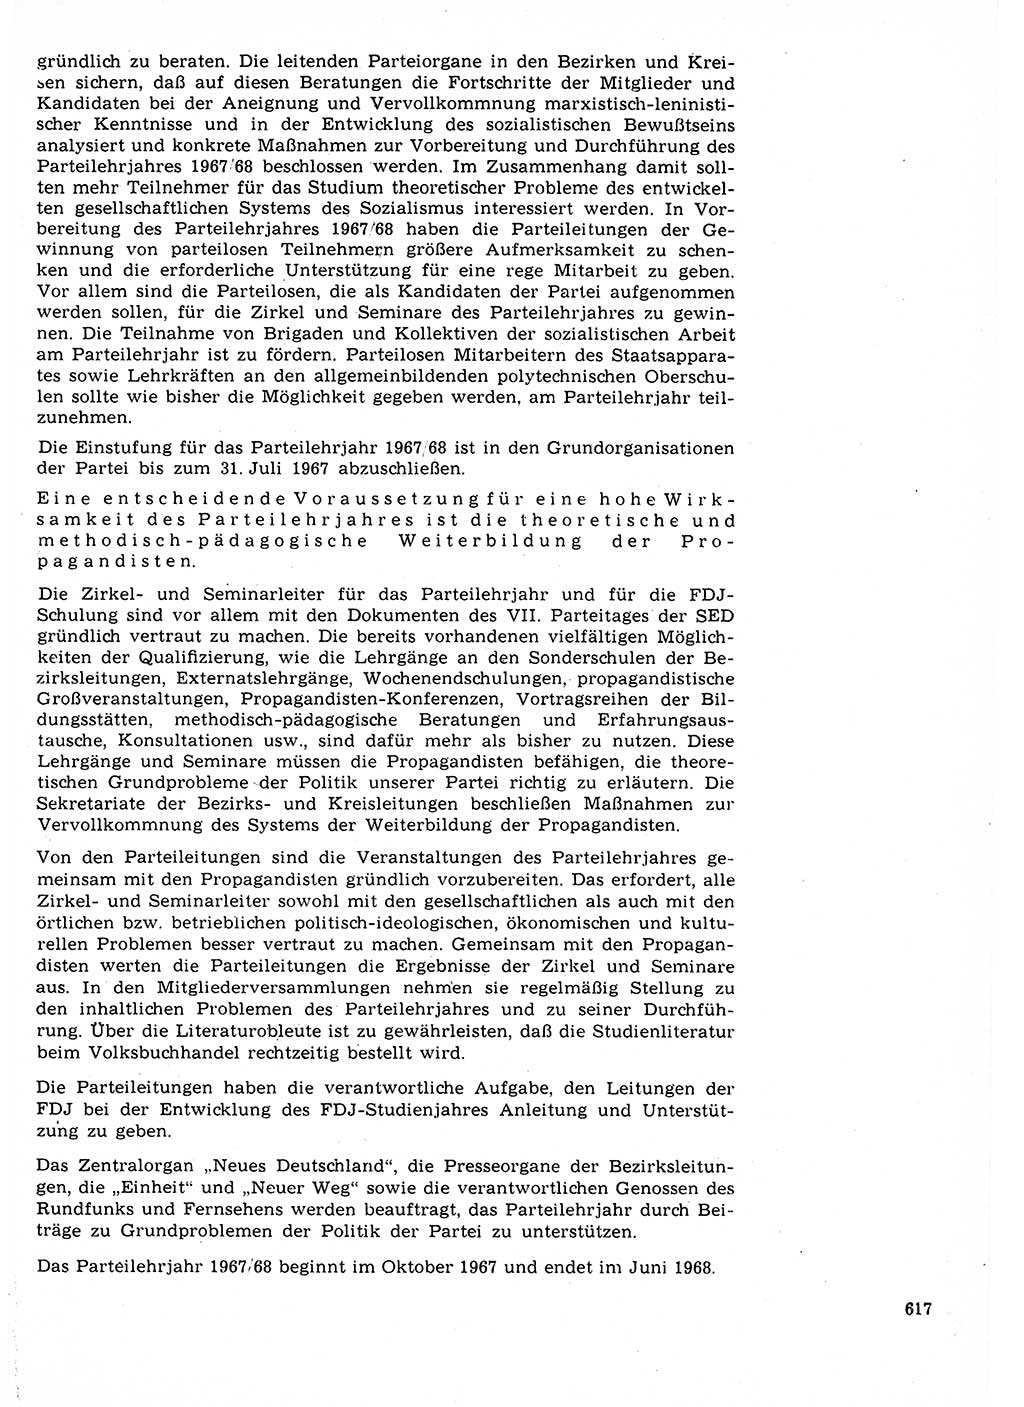 Neuer Weg (NW), Organ des Zentralkomitees (ZK) der SED (Sozialistische Einheitspartei Deutschlands) für Fragen des Parteilebens, 22. Jahrgang [Deutsche Demokratische Republik (DDR)] 1967, Seite 617 (NW ZK SED DDR 1967, S. 617)